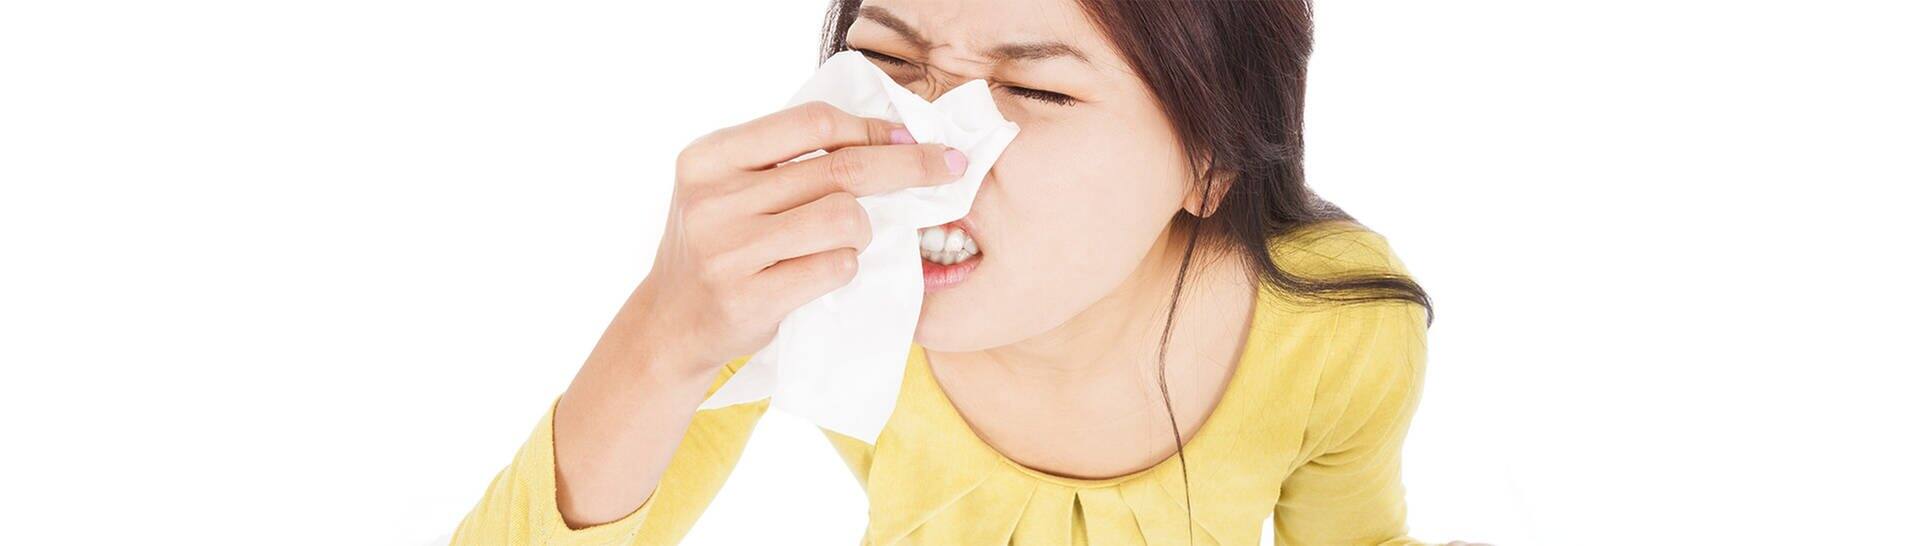 Frau, die ihre Augen geschlossen hat und in ein Taschentuch niest  (Foto: Adobe Stock / Tom Wang)